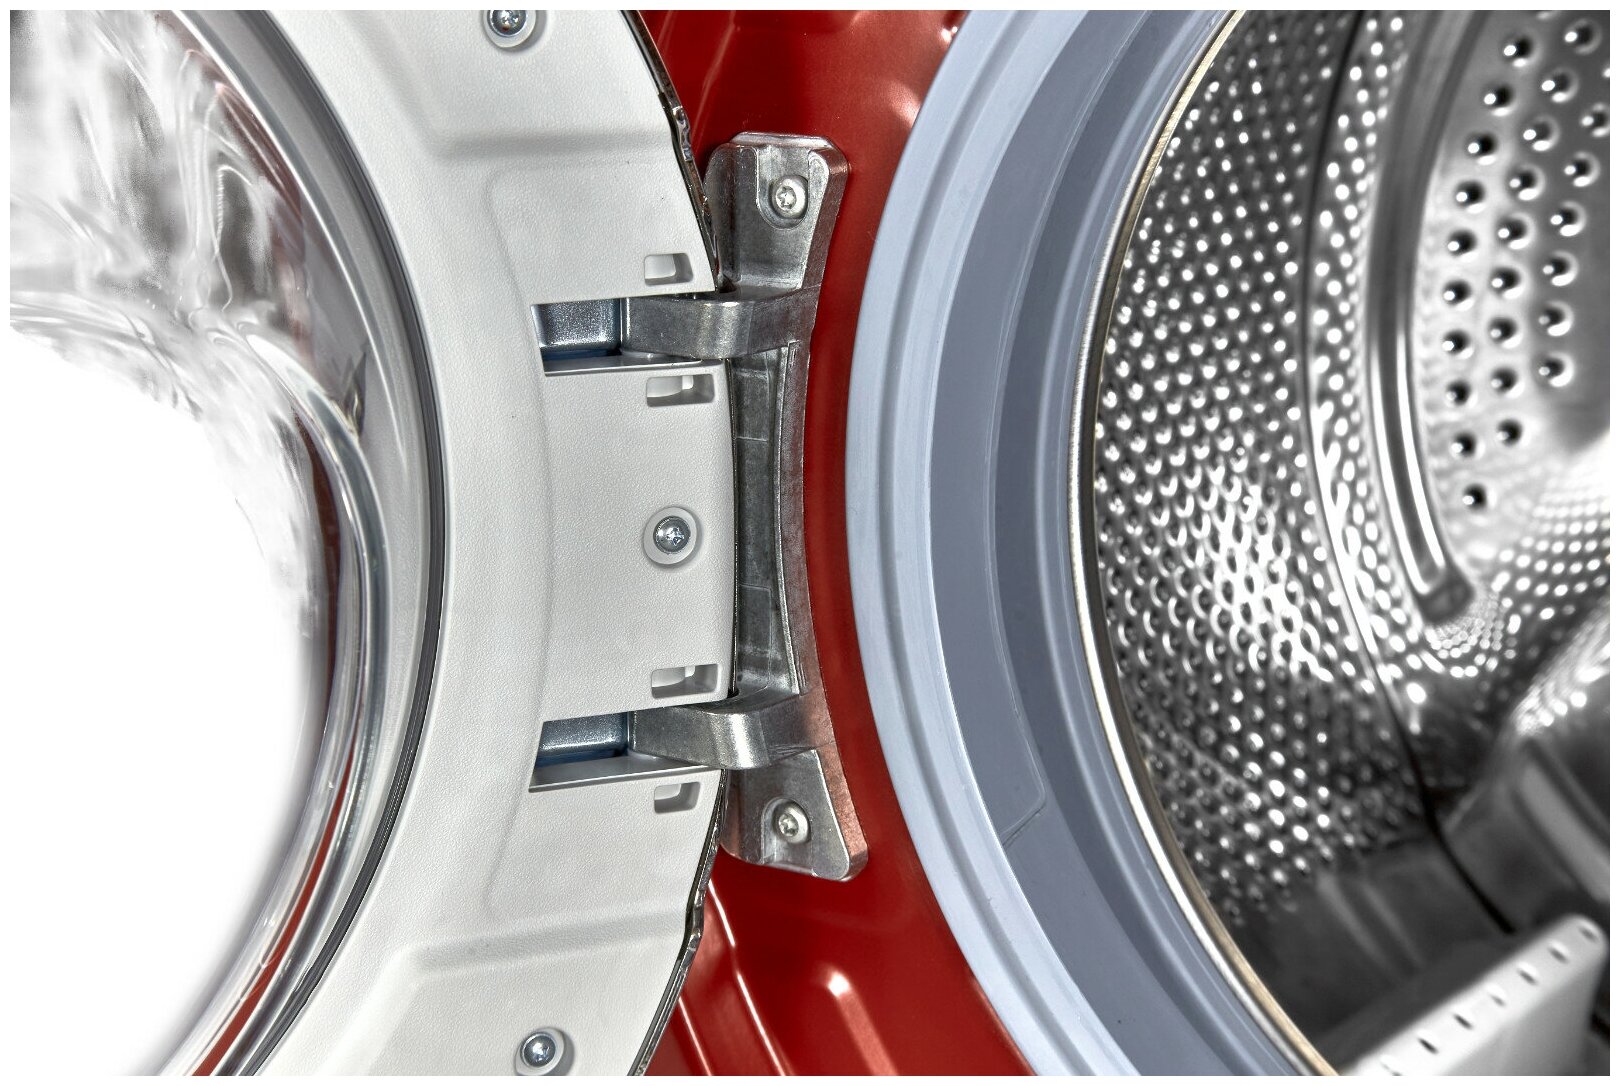 Узкая стиральная машина, 84.5x59.7x41.6 см, загрузка фронтальная, 6кг, до 1200 об/мин при отжиме, A++, LED дисплей, красная - фотография № 7